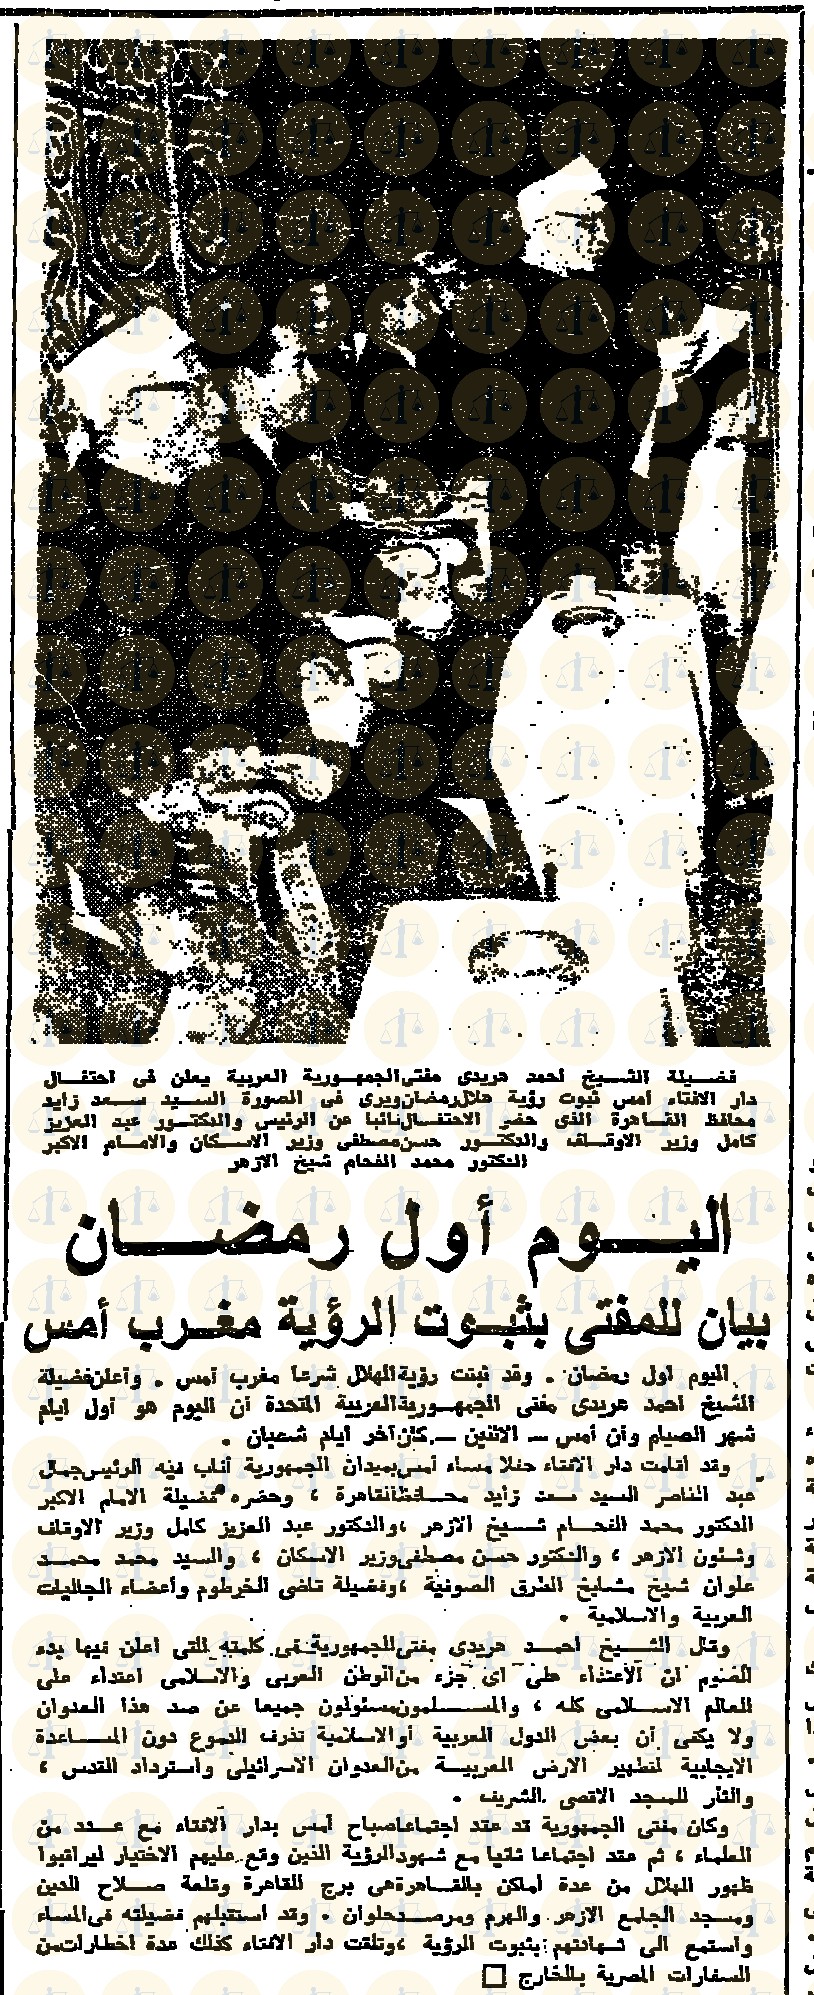  خبر غرة رمضان 1369= 11 نوفمبر 1969